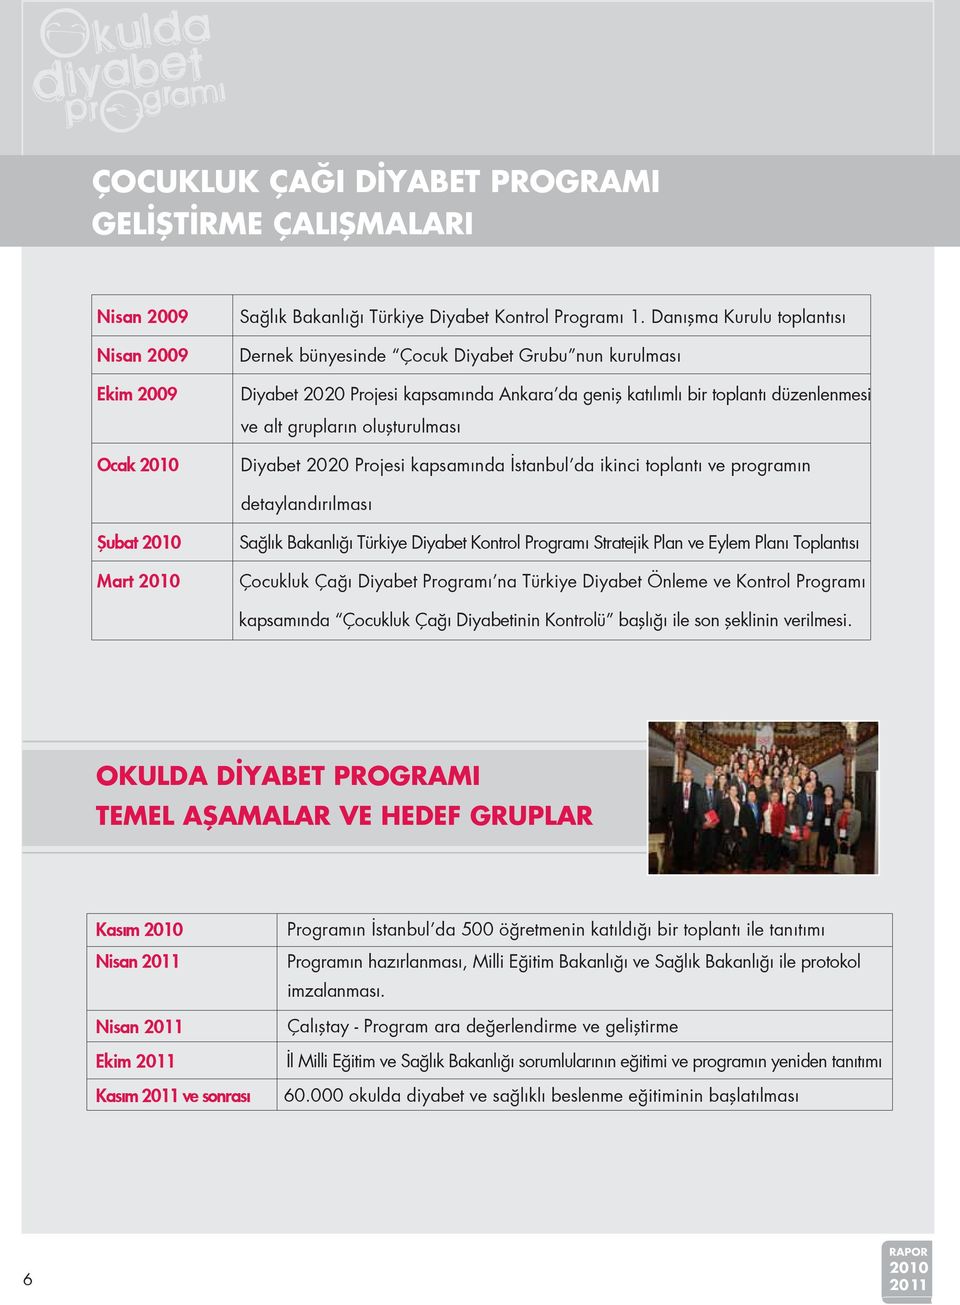 2010 Diyabet 2020 Projesi kapsamında İstanbul da ikinci toplantı ve programın detaylandırılması Şubat 2010 Mart 2010 Sağlık Bakanlığı Türkiye Diyabet Kontrol Programı Stratejik Plan ve Eylem Planı